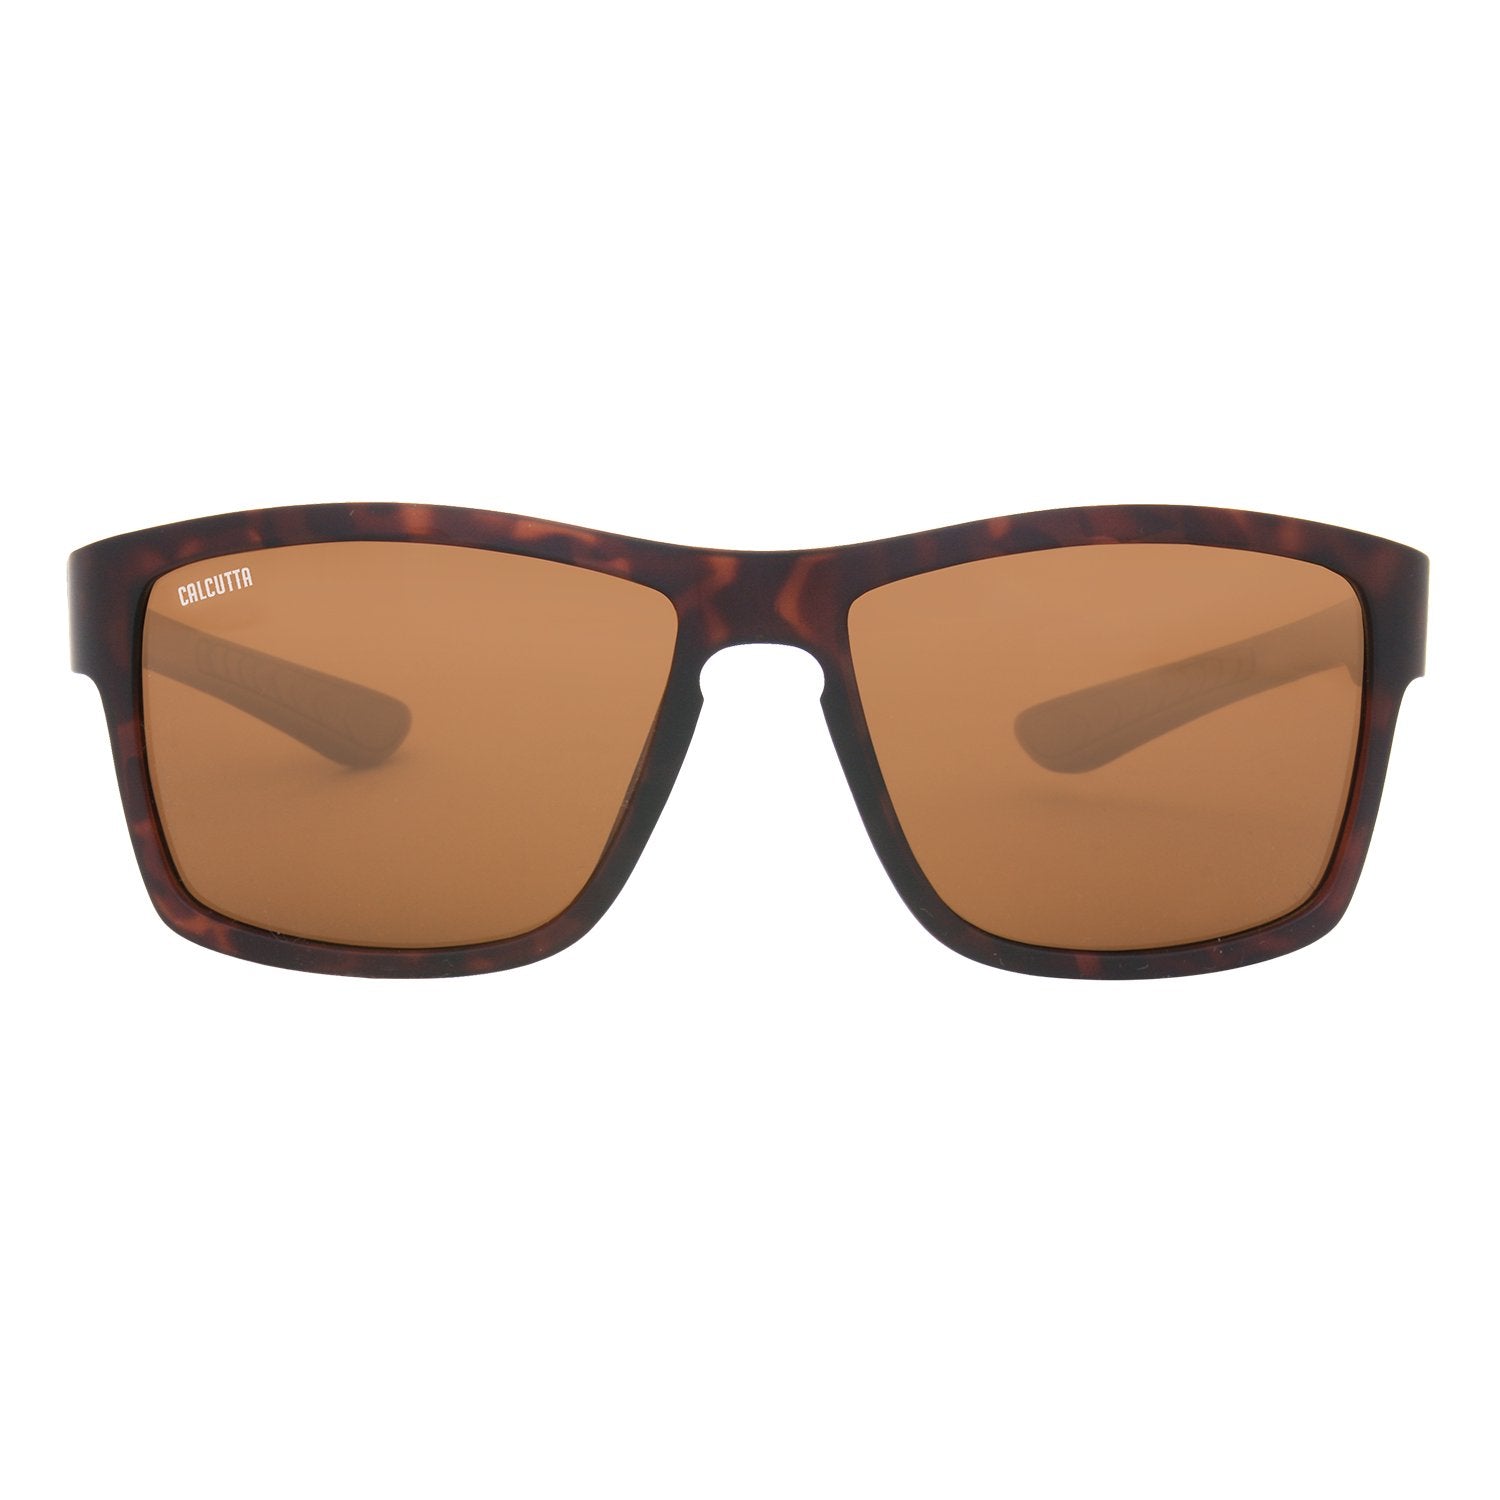 Calcutta Marsh Grass Sunglasses Matte Tortoise Frame Brown Lens